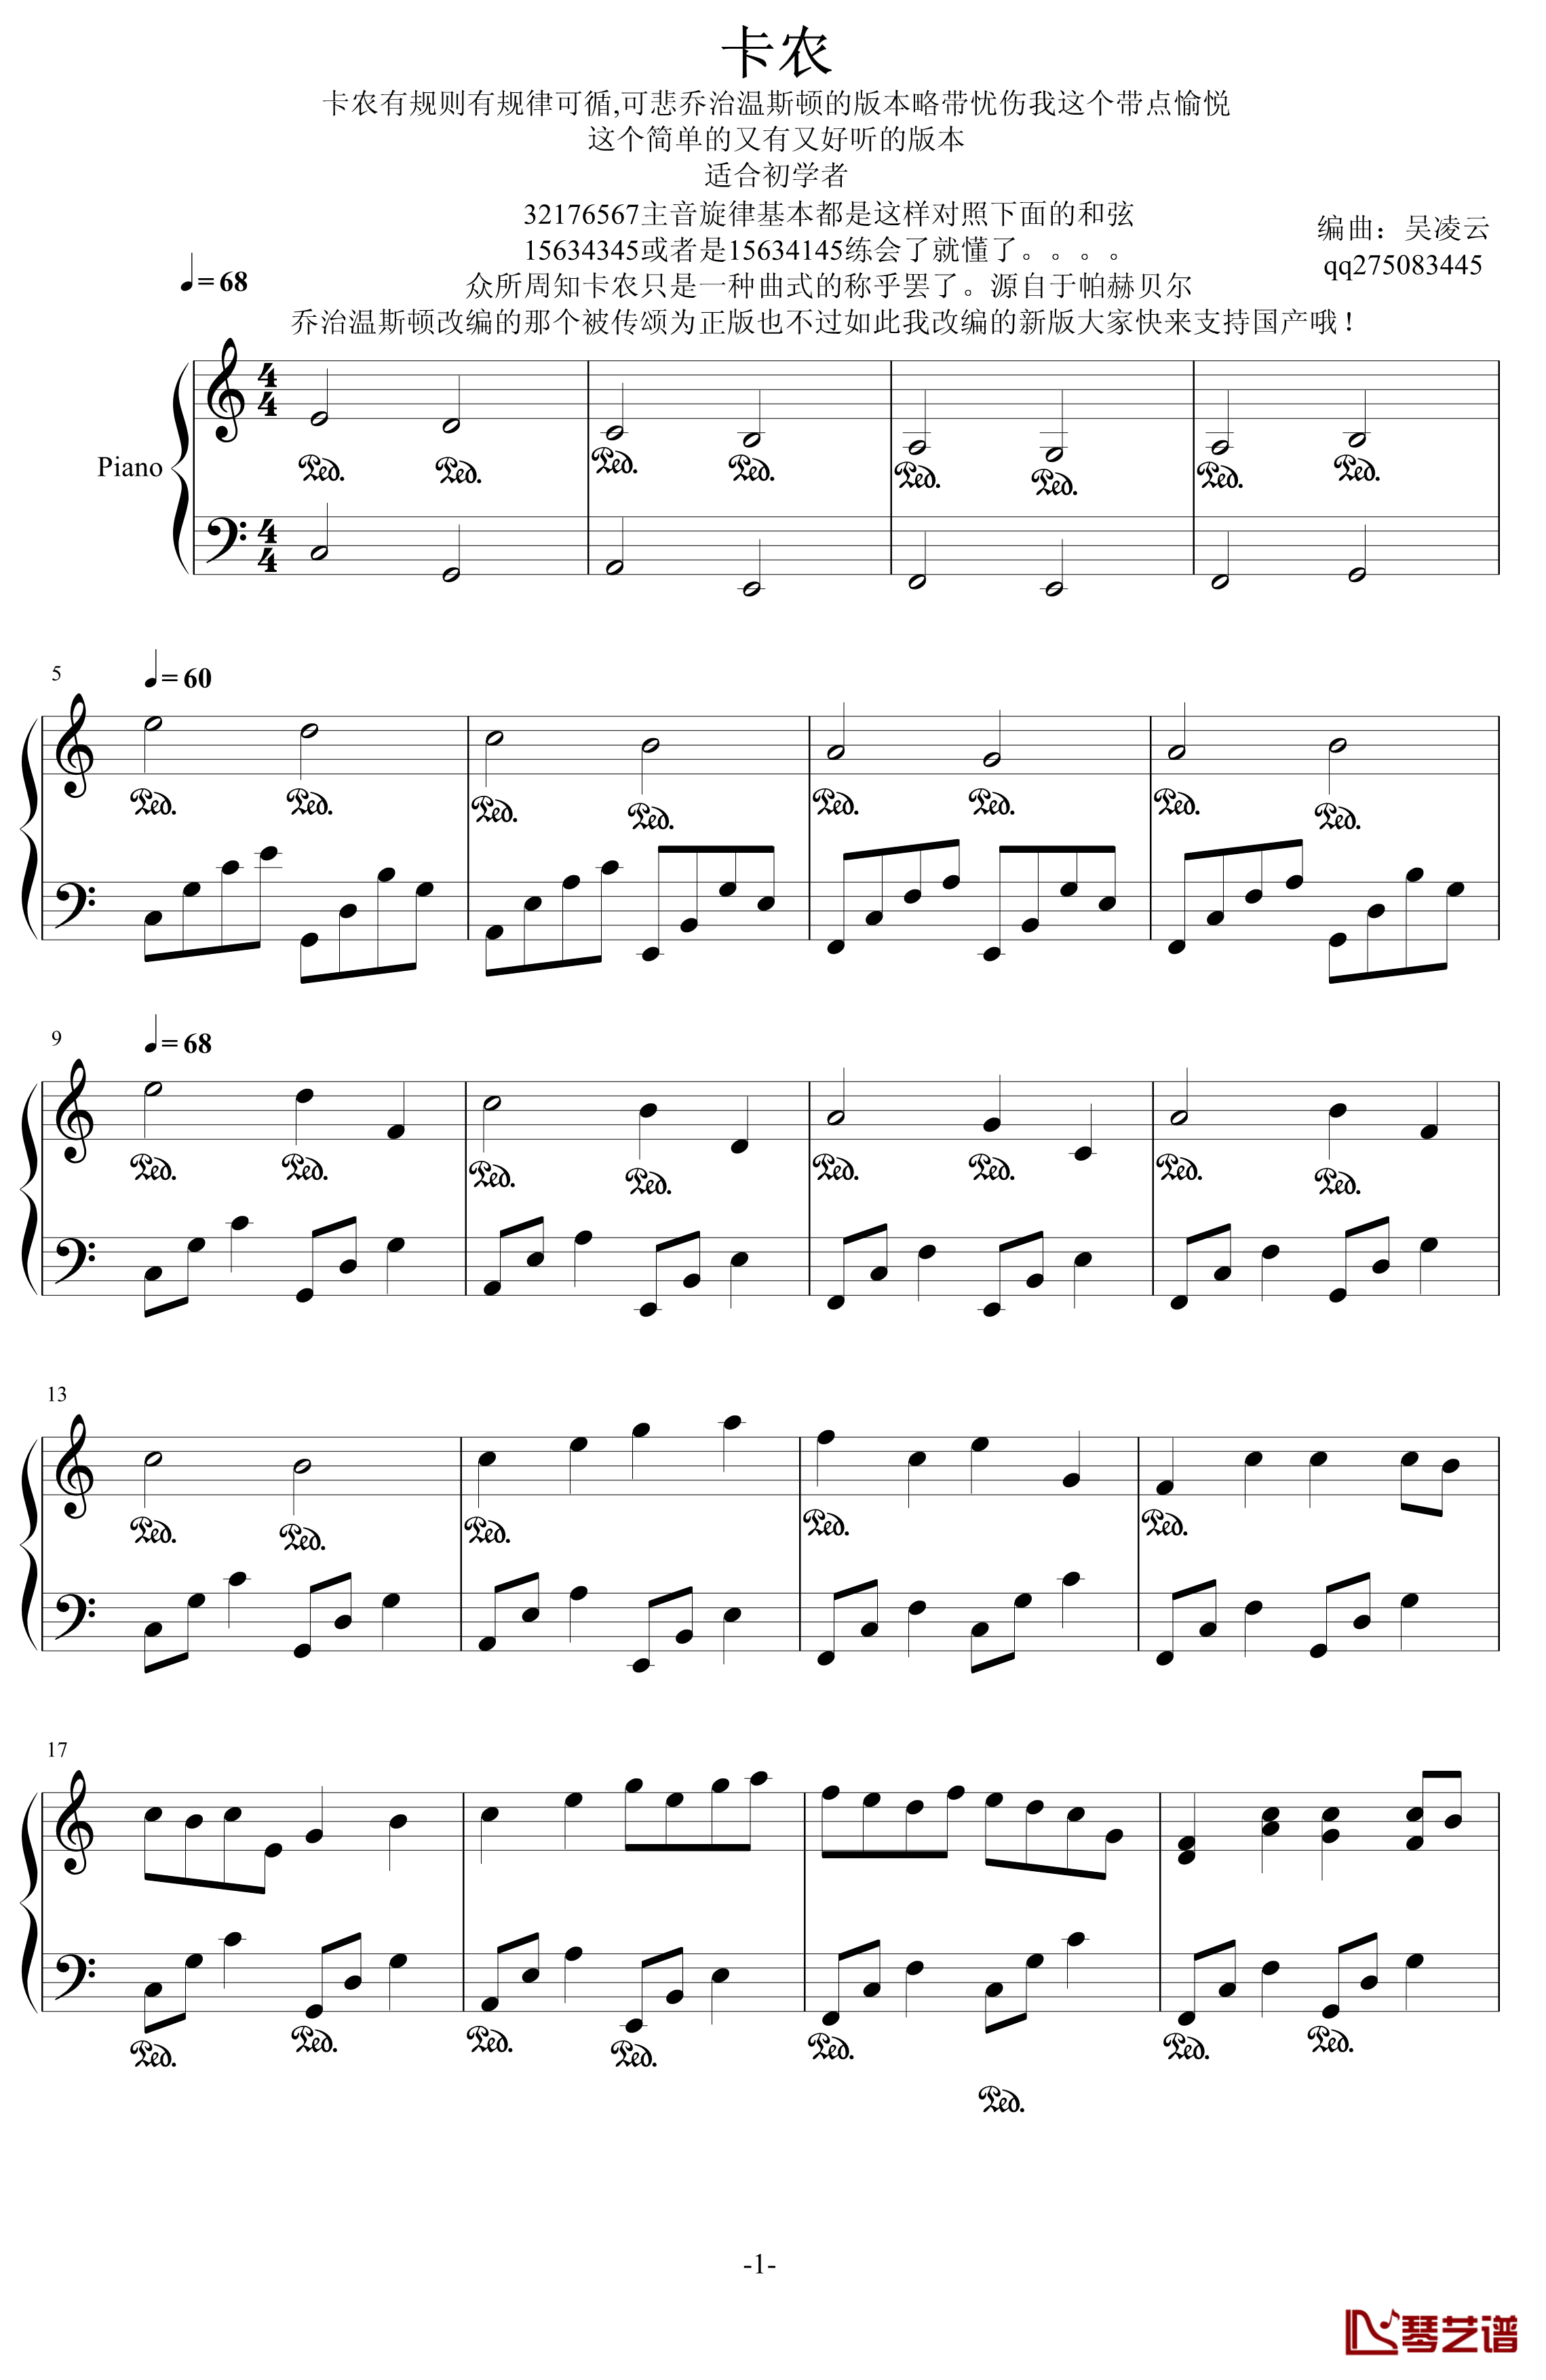 卡农钢琴谱-最有可能超越乔治温斯顿国产版-帕赫贝尔-Pachelbel1